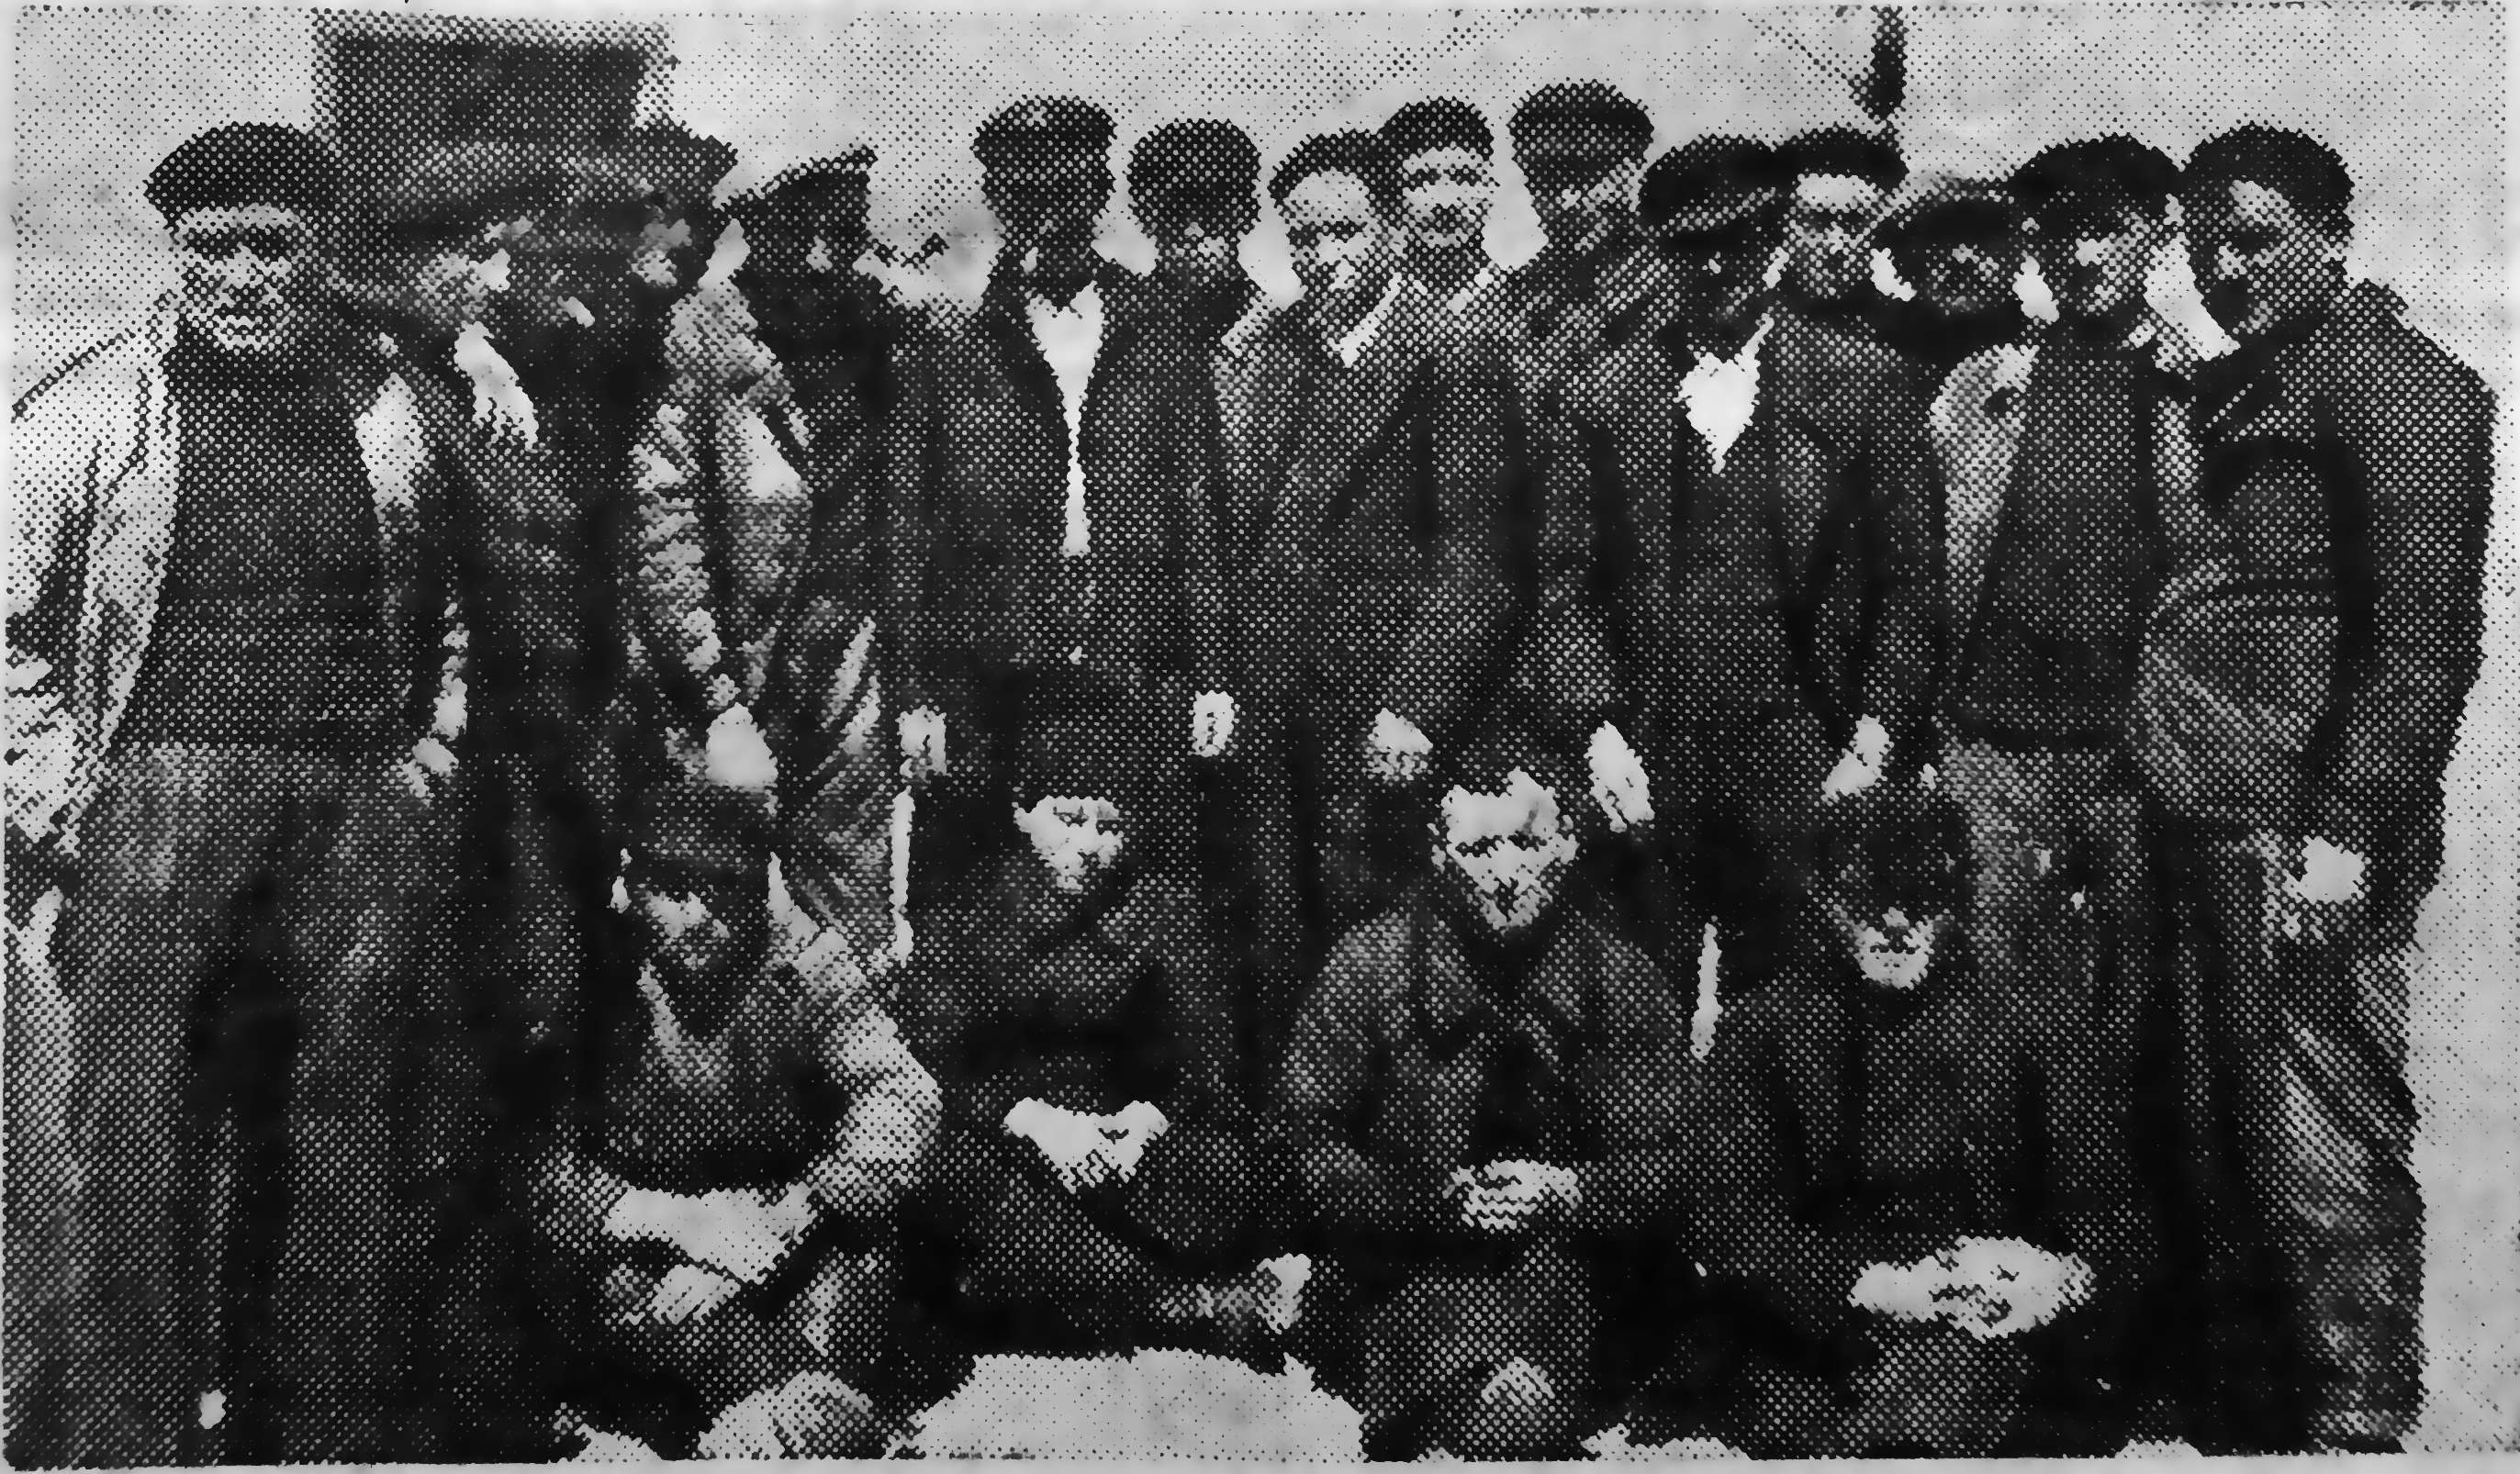 Crew of the Martin Pecheur